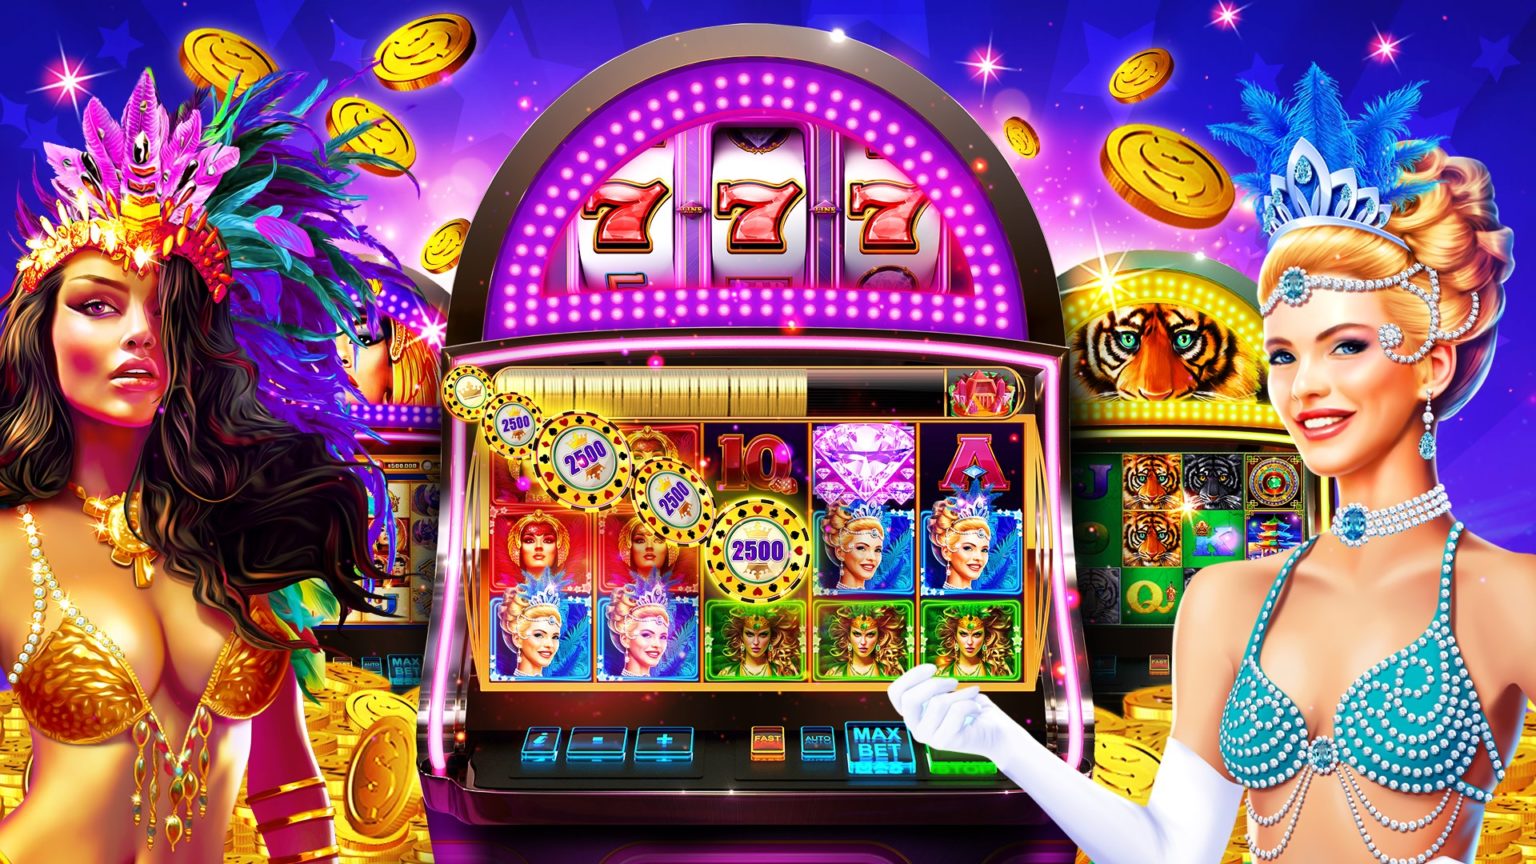 Casino игровые автоматы онлайн сколько стоит билет 4 из 20 столото